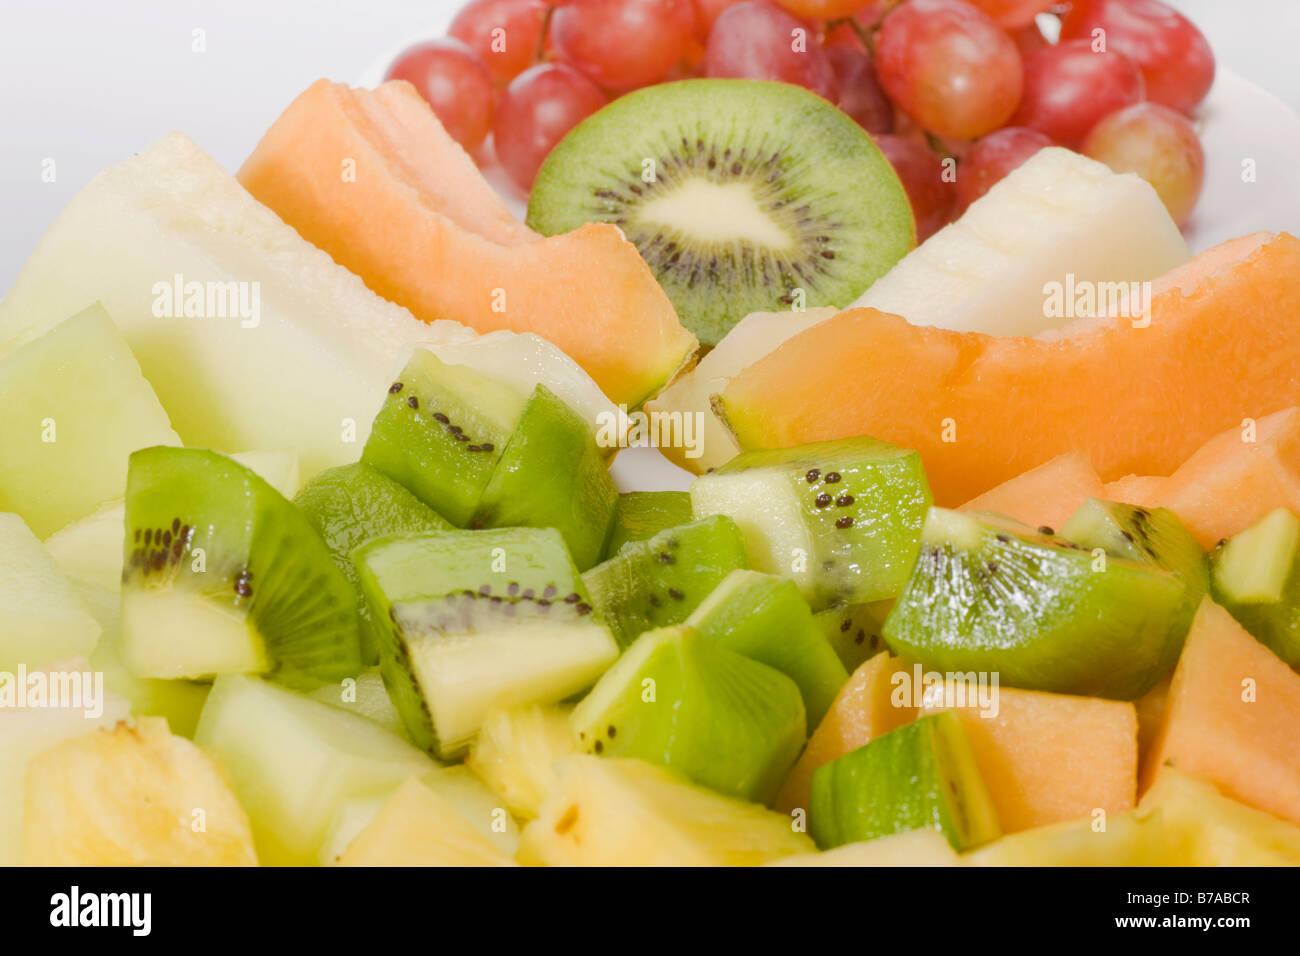 Tranches de fruits exotiques, le sucre melon, melon miel, ananas, kiwis et raisins Banque D'Images